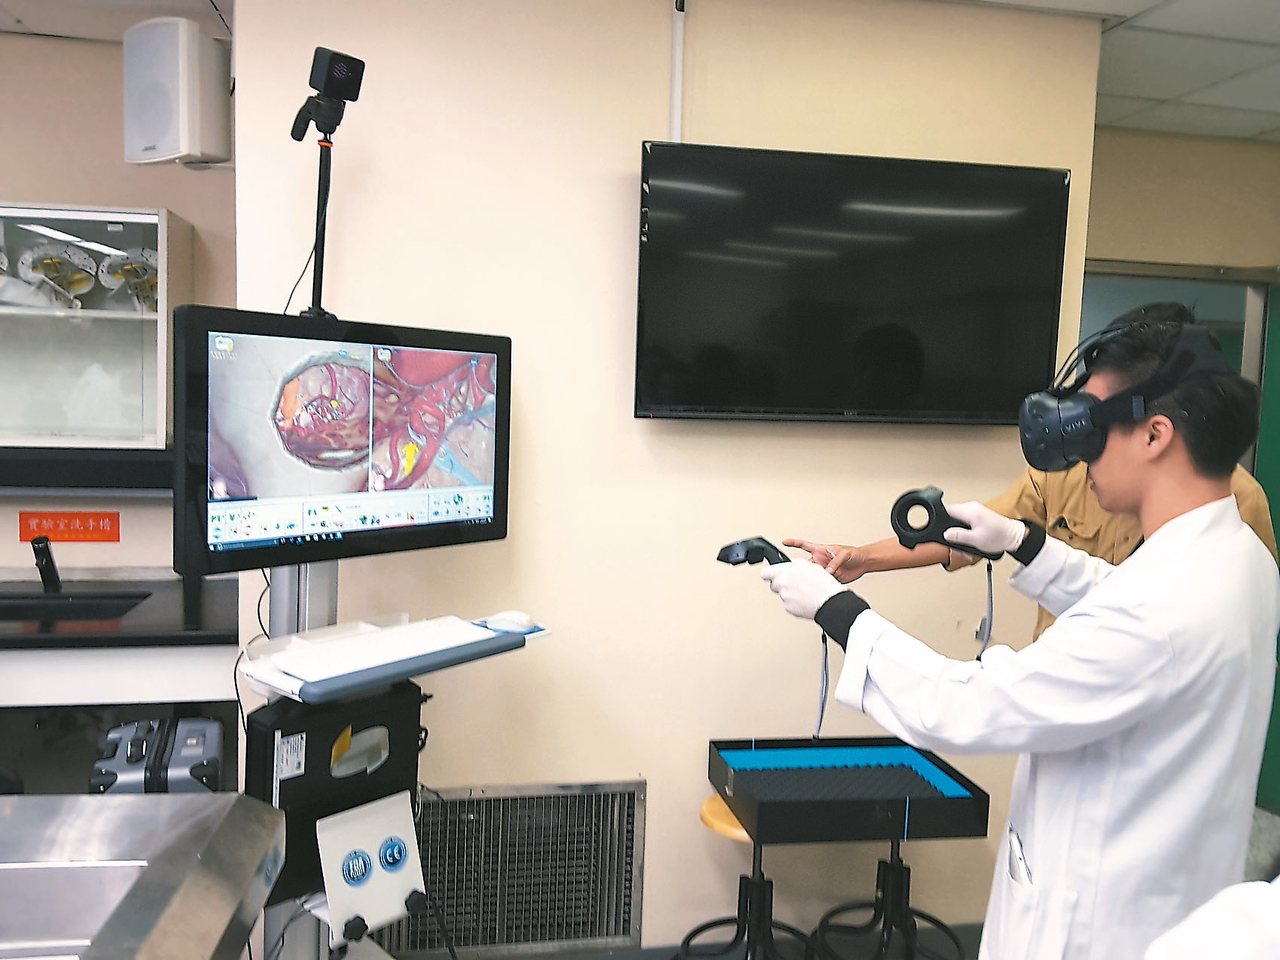 醫學生正使用頭戴顯示器與數據搖桿感受實境動脈瘤虛擬手術，在VR鏡頭裡看到的就和電腦螢幕上一樣，如同置身於手術場景，跟執刀醫師看到的一樣, 可以從多角度及多模組嘗試手術過程直到滿意為止，因為腦部精細手術如同太空飛行模擬，只許成功不容些許差池。